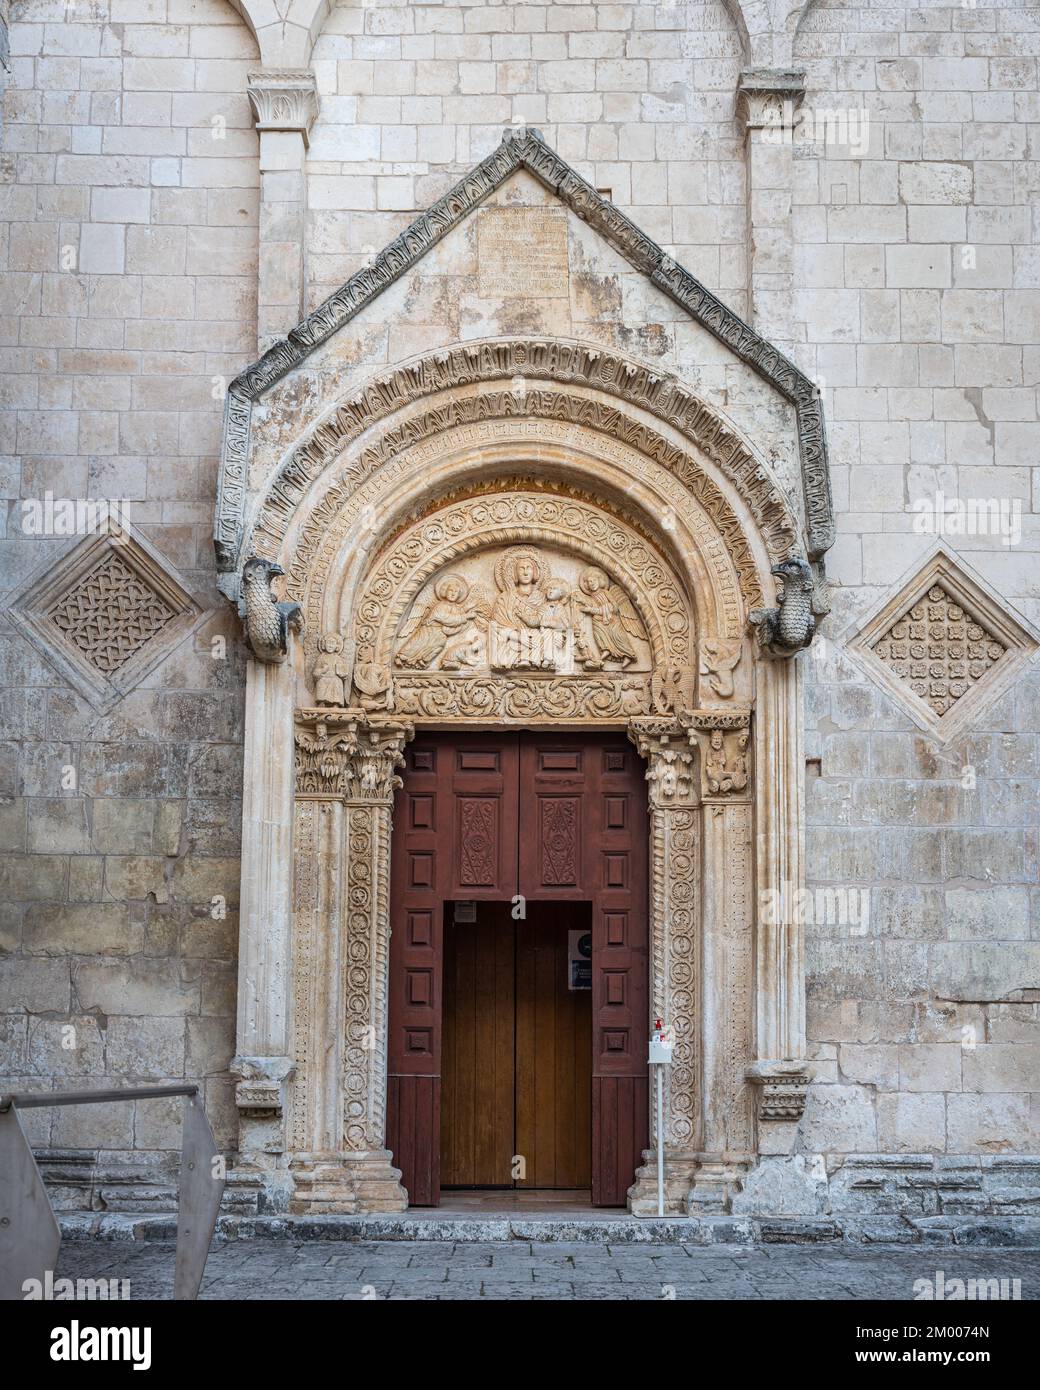 Das reich verzierte Portal der Kirche Santa Maria Maggiore. Eine mittelalterliche katholische Kirche in Monte Sant'Angelo. Monte Sant'Angelo, Apulien Stockfoto